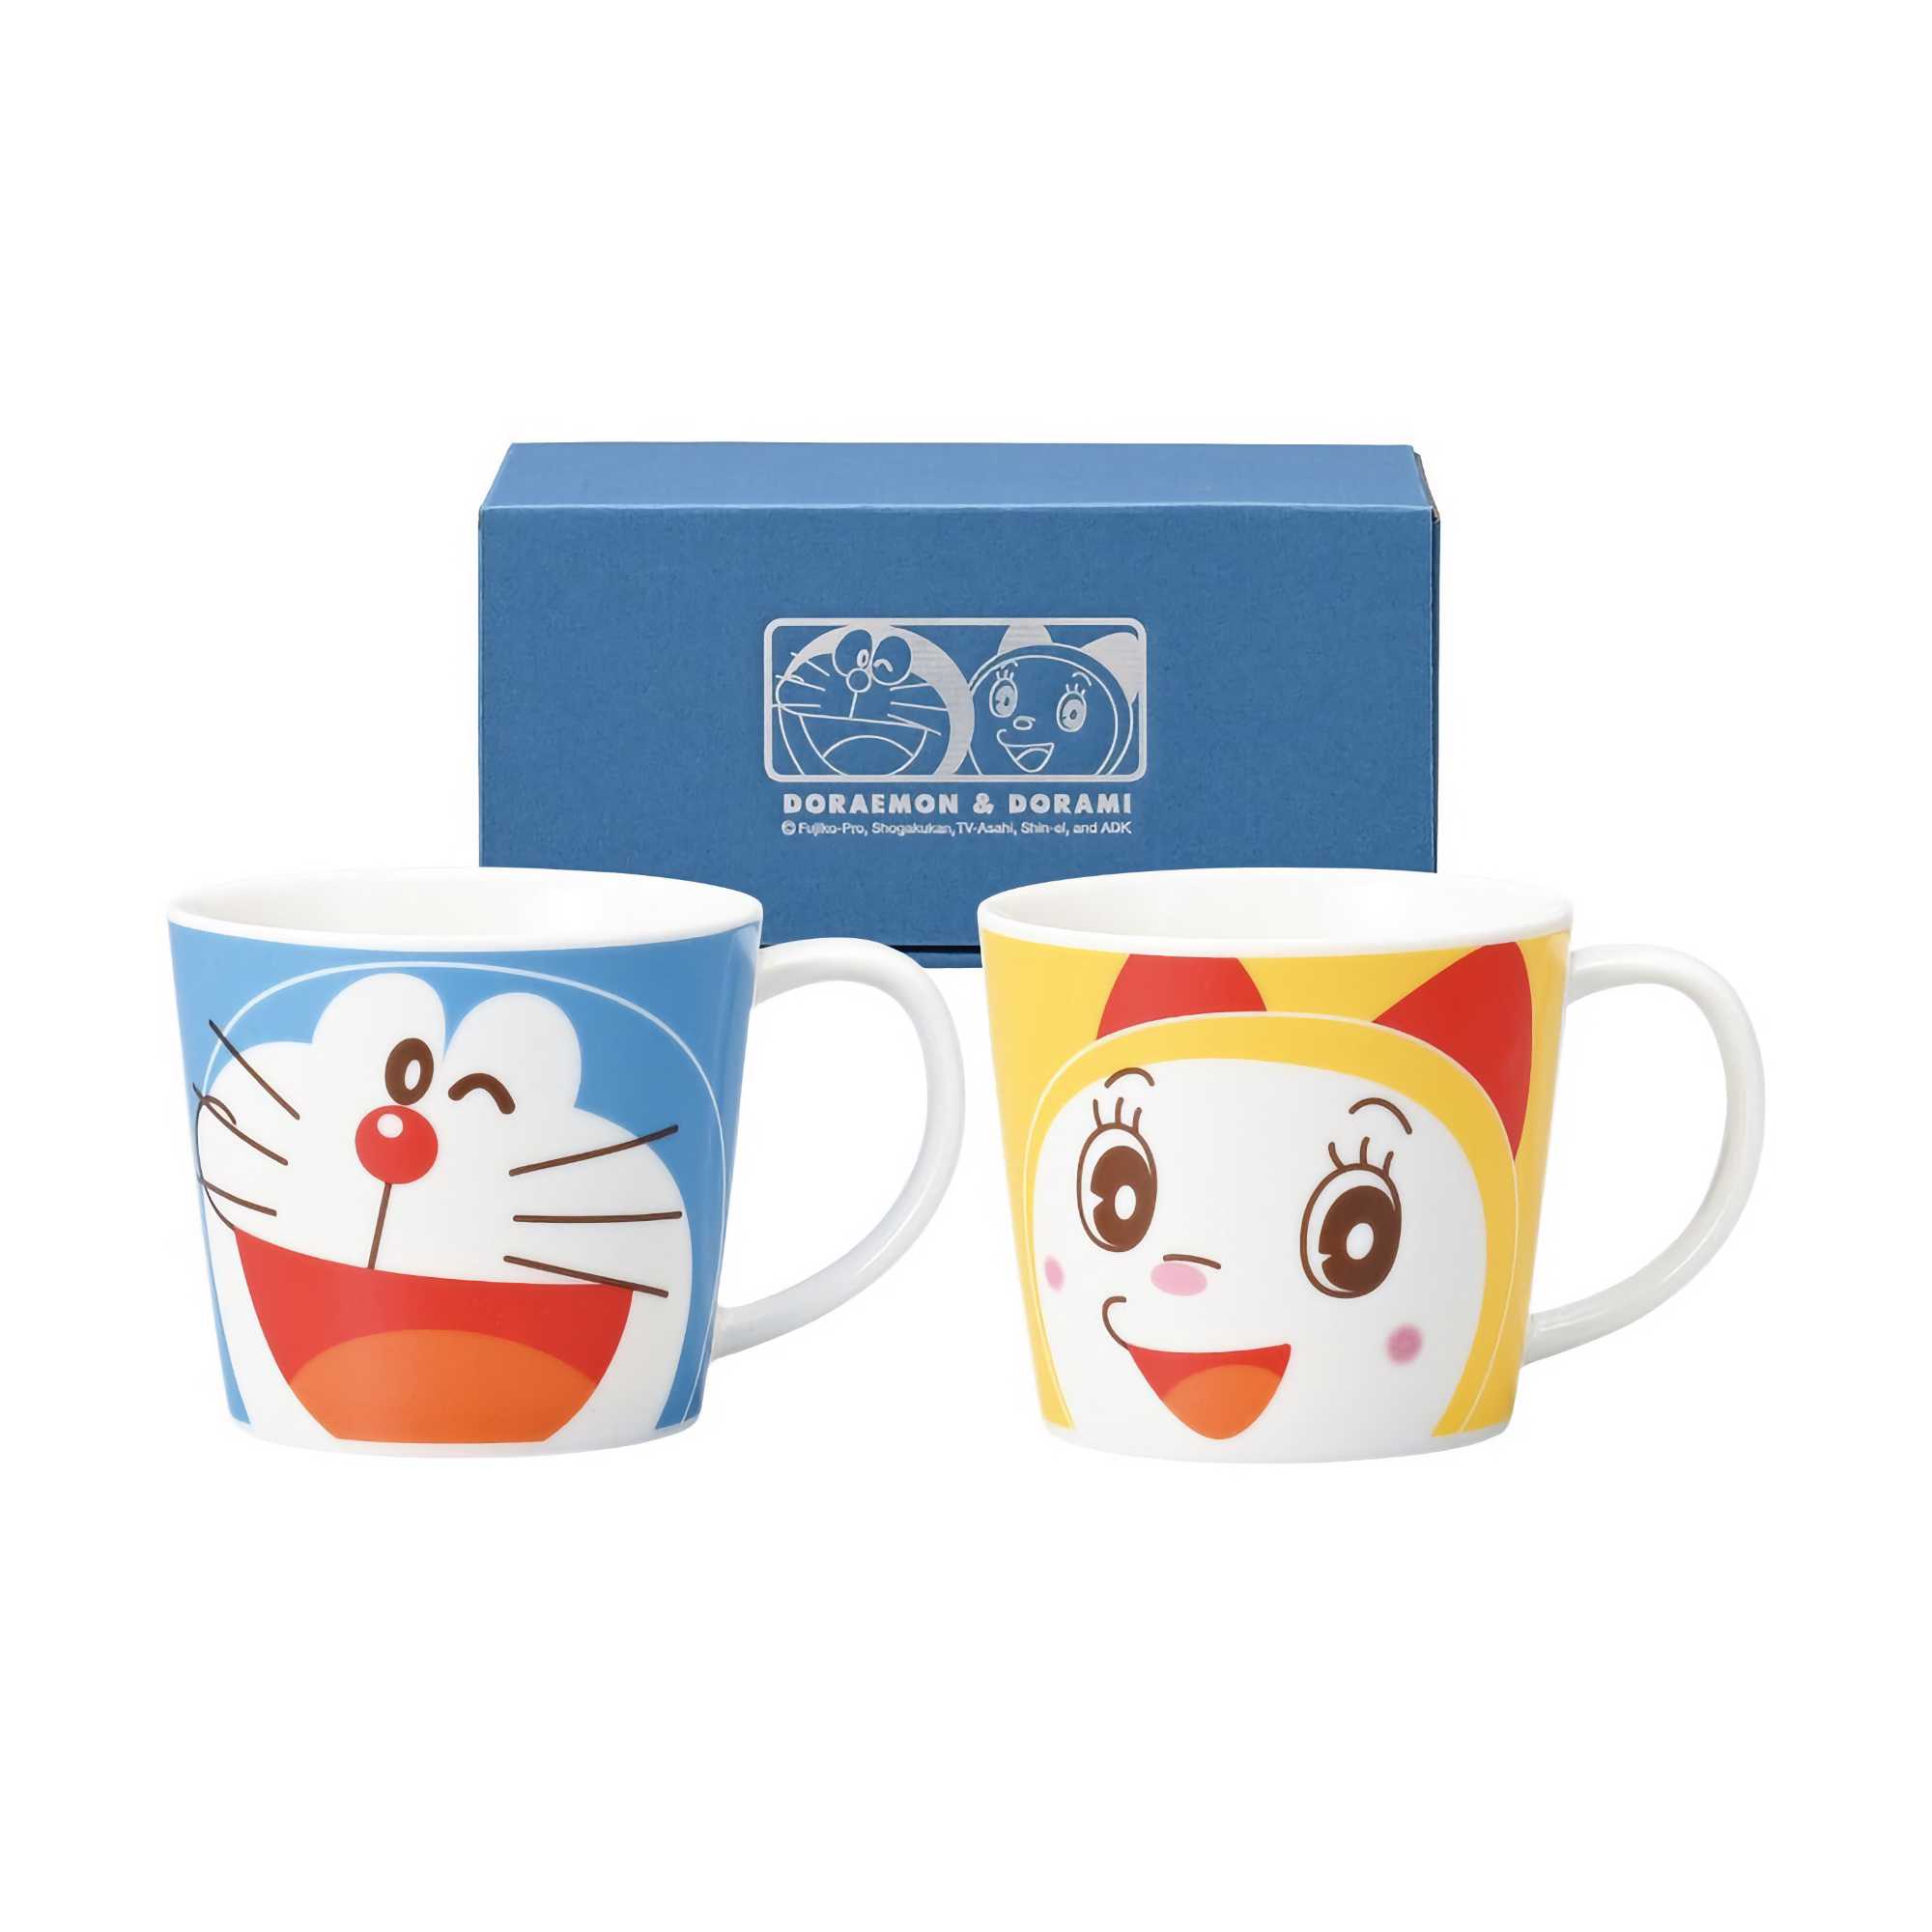 Doraemon Dorami Smiling Face Mug Set